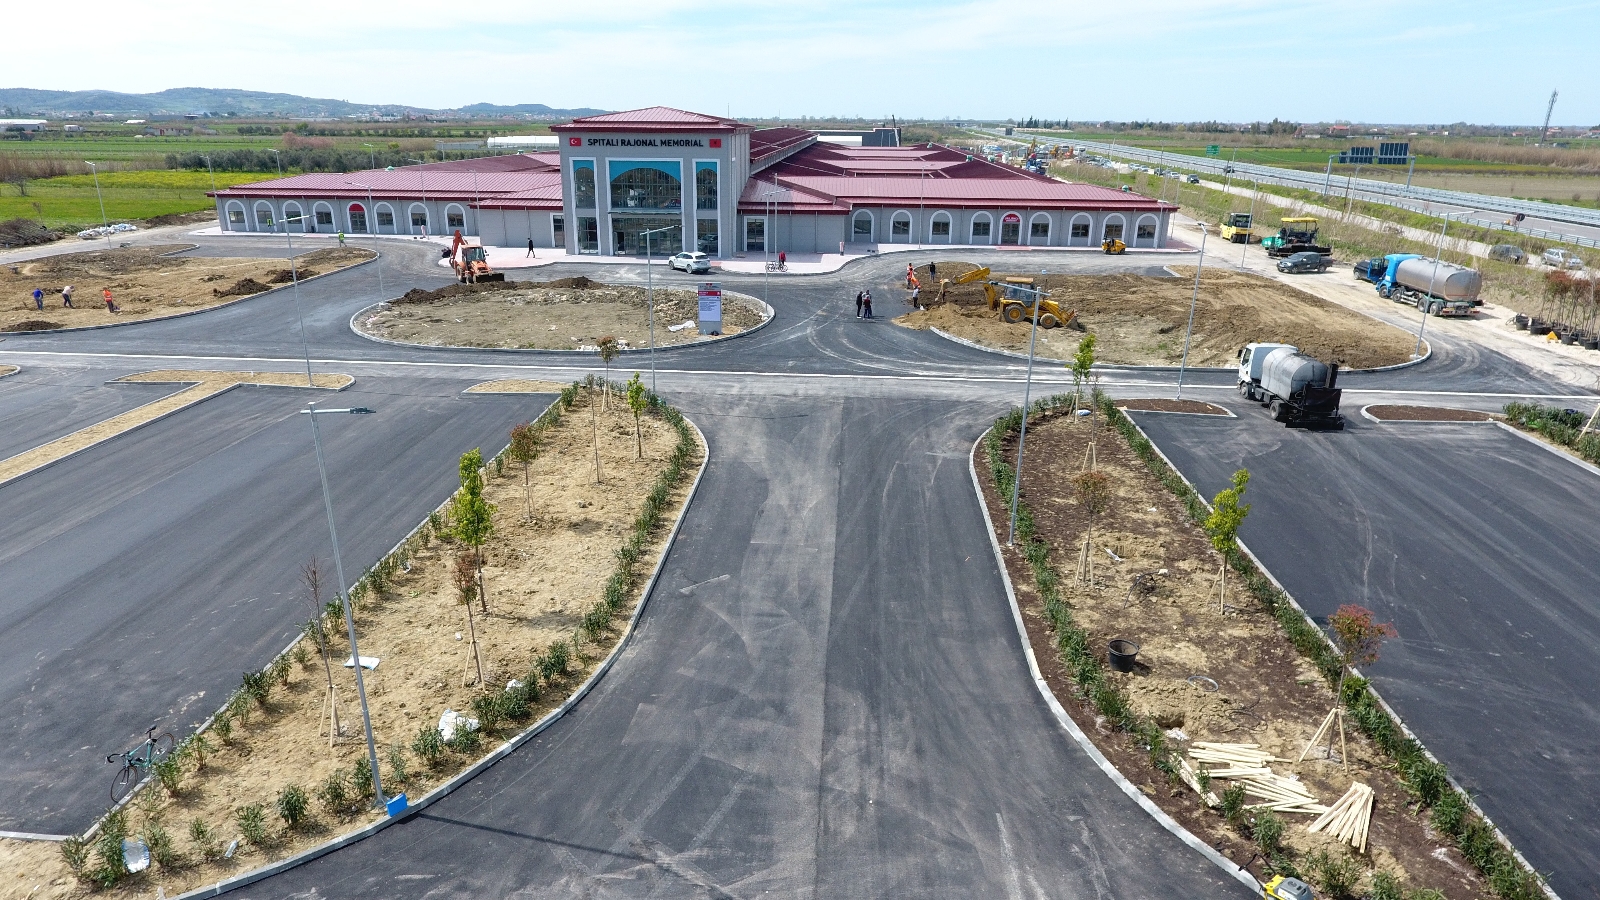 Türkiye Arnavutluk’a söz verdiği hastanenin inşaatını tamamladı